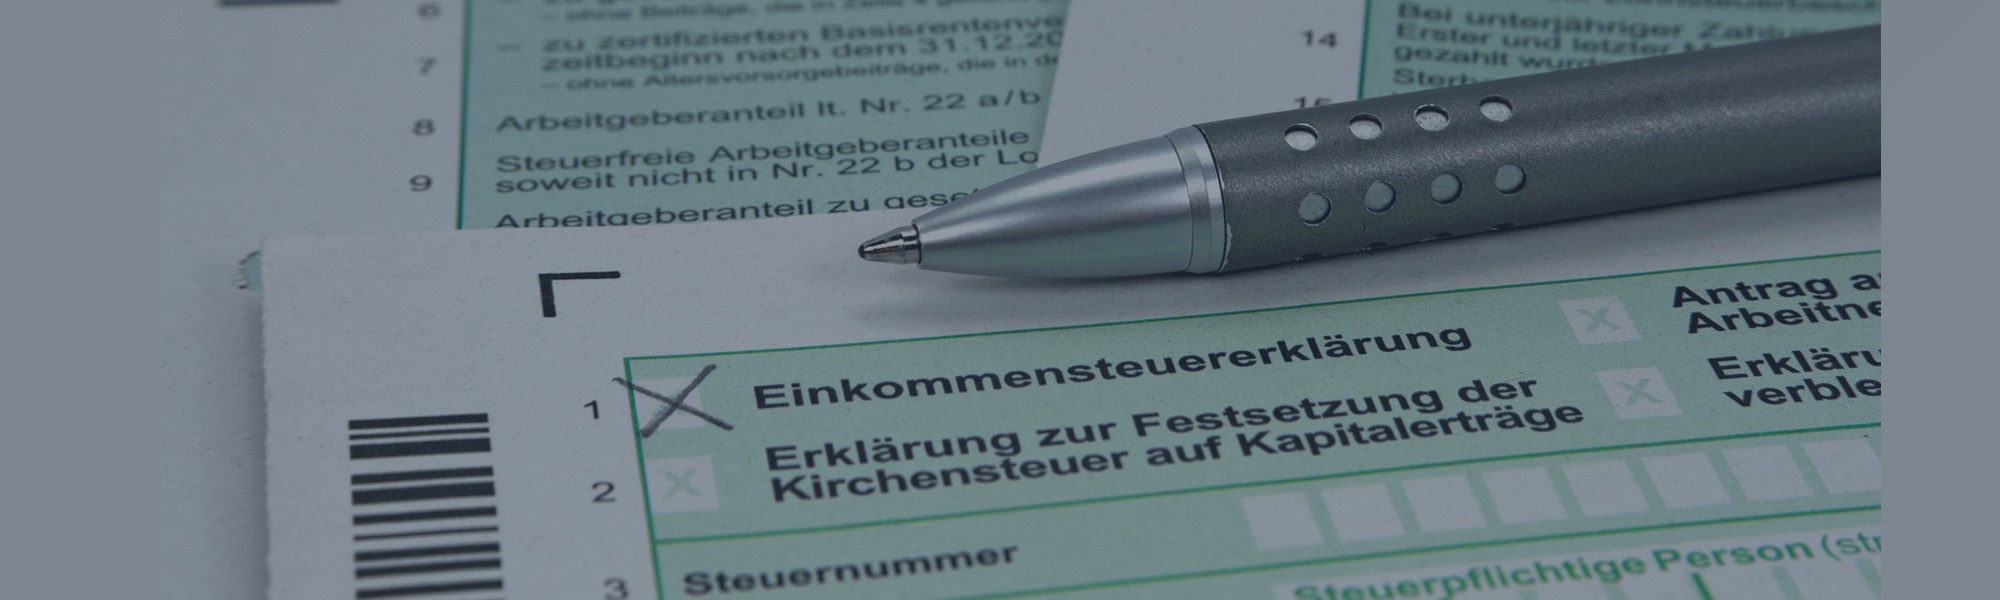 Rozliczenie podatku z Niemiec - dokumenty